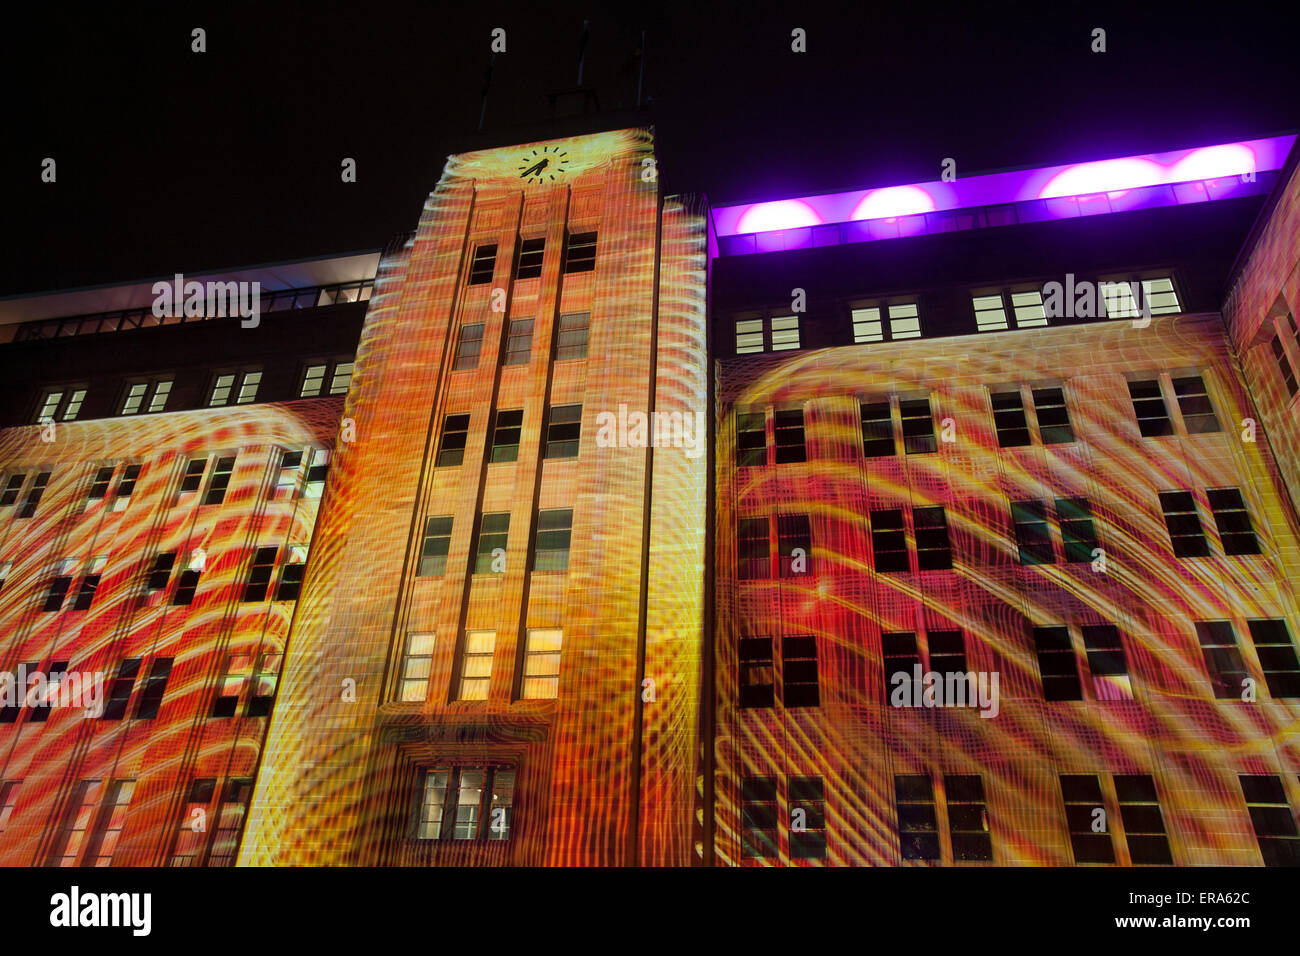 Museum of Contemporary Art Australia, Vivid Sydney 2015 Music, Lights and Ideas Festival findet vom 22. Mai 2015 bis 8. juni in verschiedenen Stadtteilen von Sydney statt. Die Künstler Rebecca Baumann und Danny Rose Mechanised Colour Assemblage erstellen Sound- und Farbmaschinen, die Farbe und Form mithilfe von 3D-Mapping ändern. Stockfoto